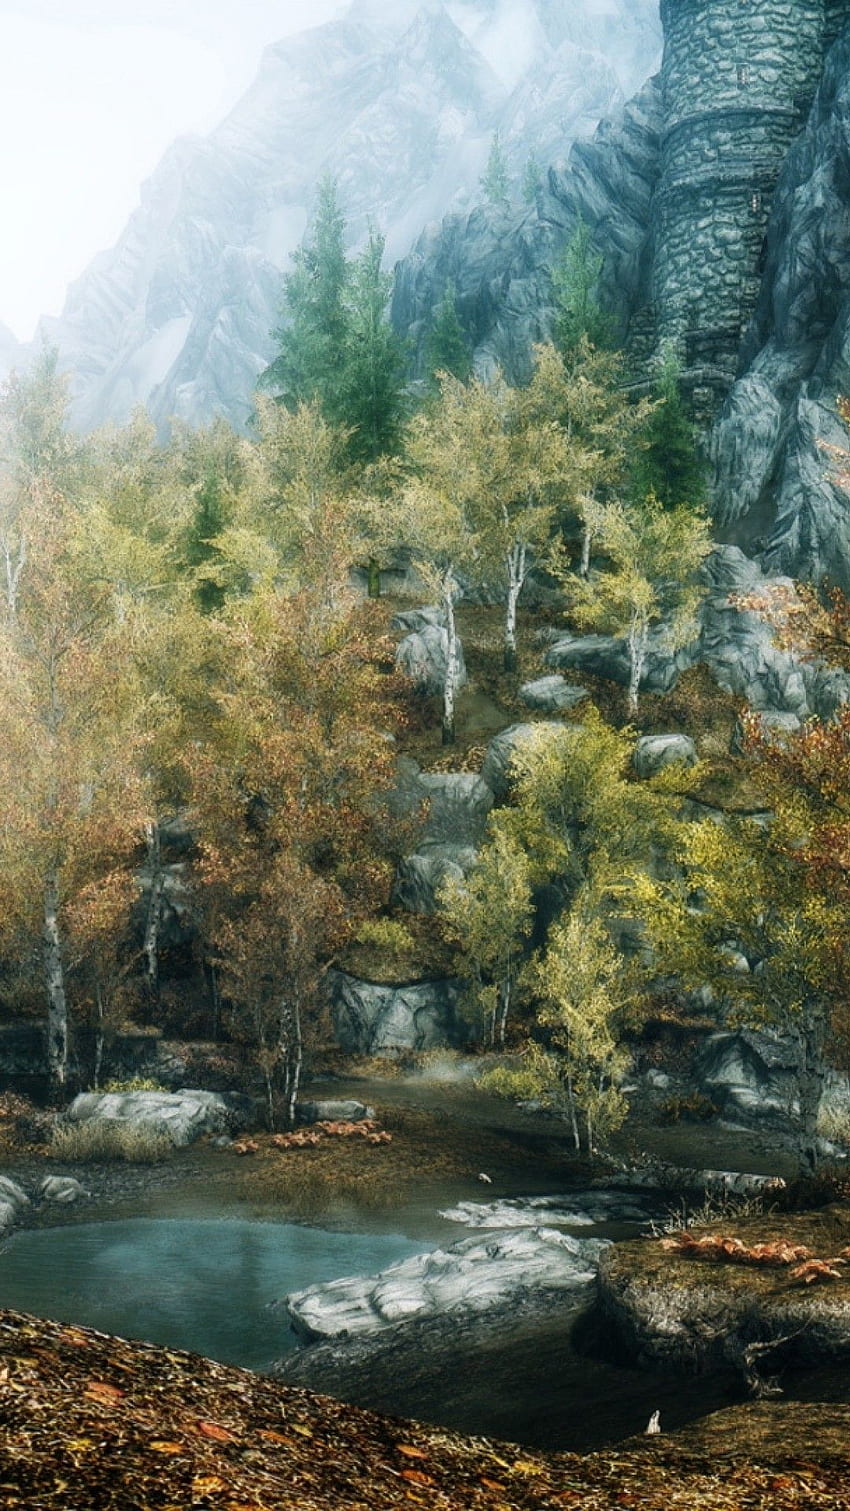 Elder Scrolls Skyrim là một trong những game nhập vai thành công nhất mọi thời đại. Những cảnh quan tuyệt đẹp và vô số nhiệm vụ hấp dẫn sẽ khiến bạn khó lòng rời mắt và mong muốn khám phá thêm. Hãy xem ngay những hình ảnh đẹp về game này.